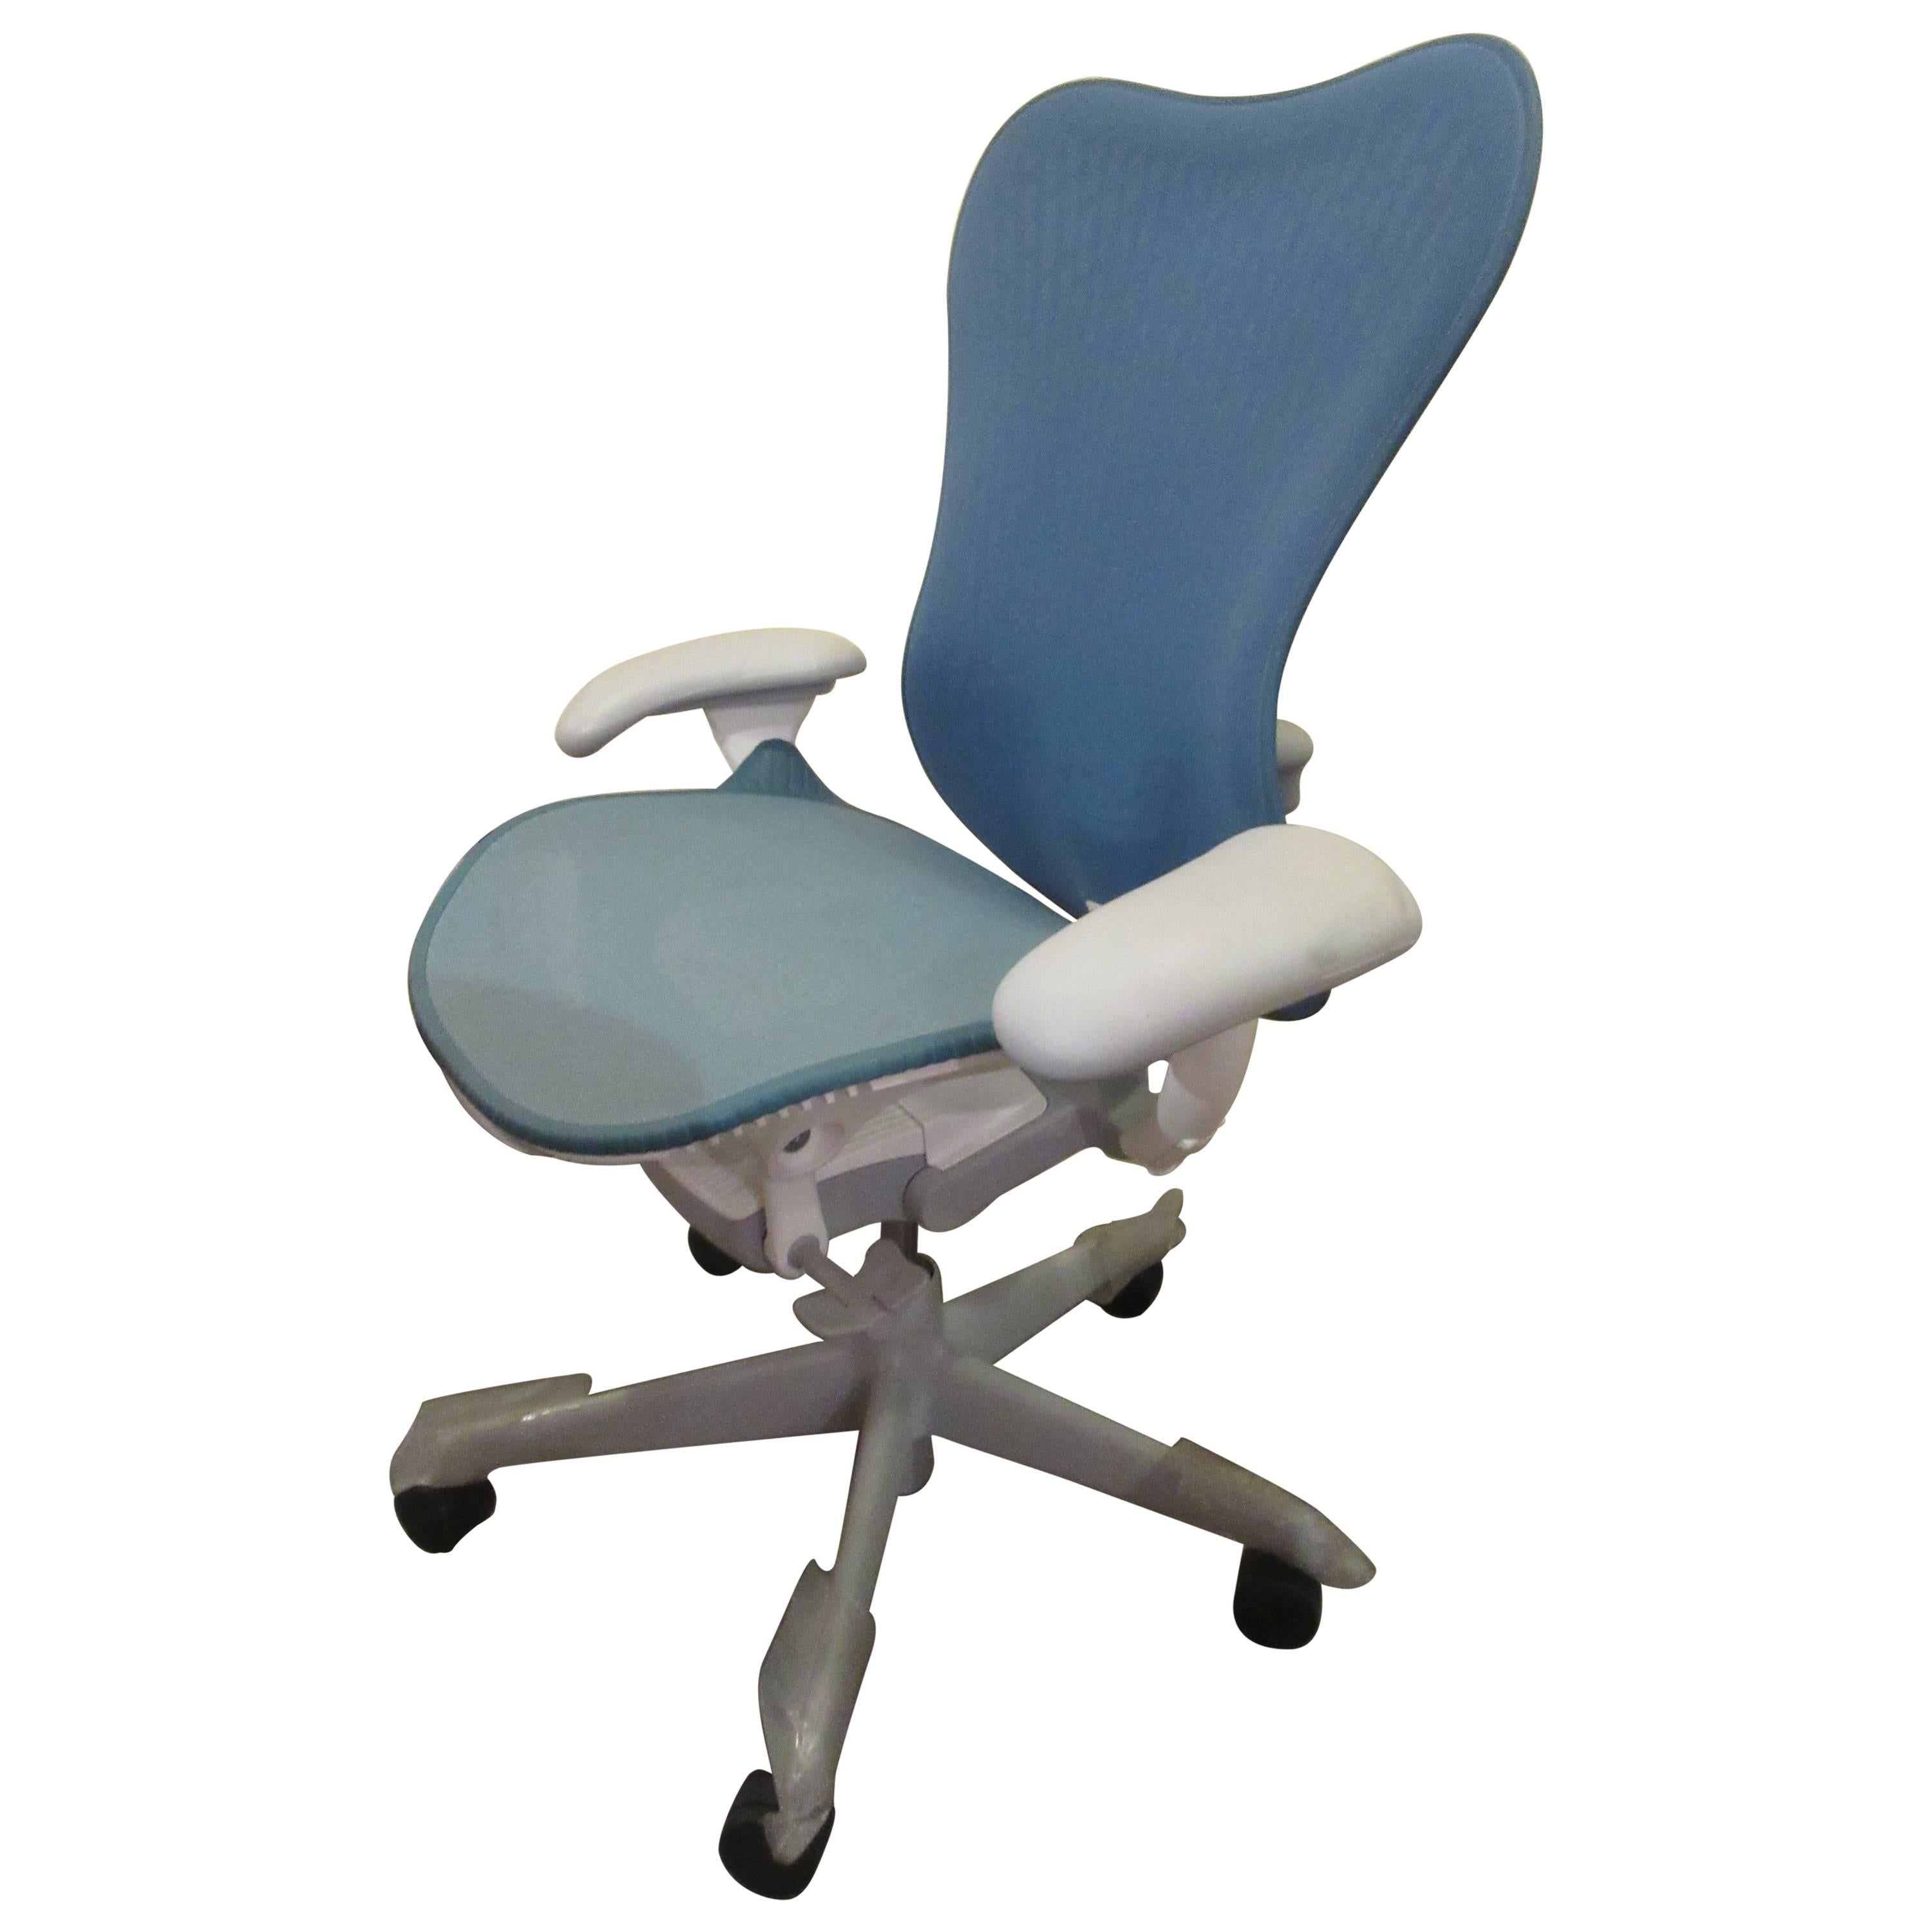 Herman Miller Mira 2 Chair from Design Studio 7.5